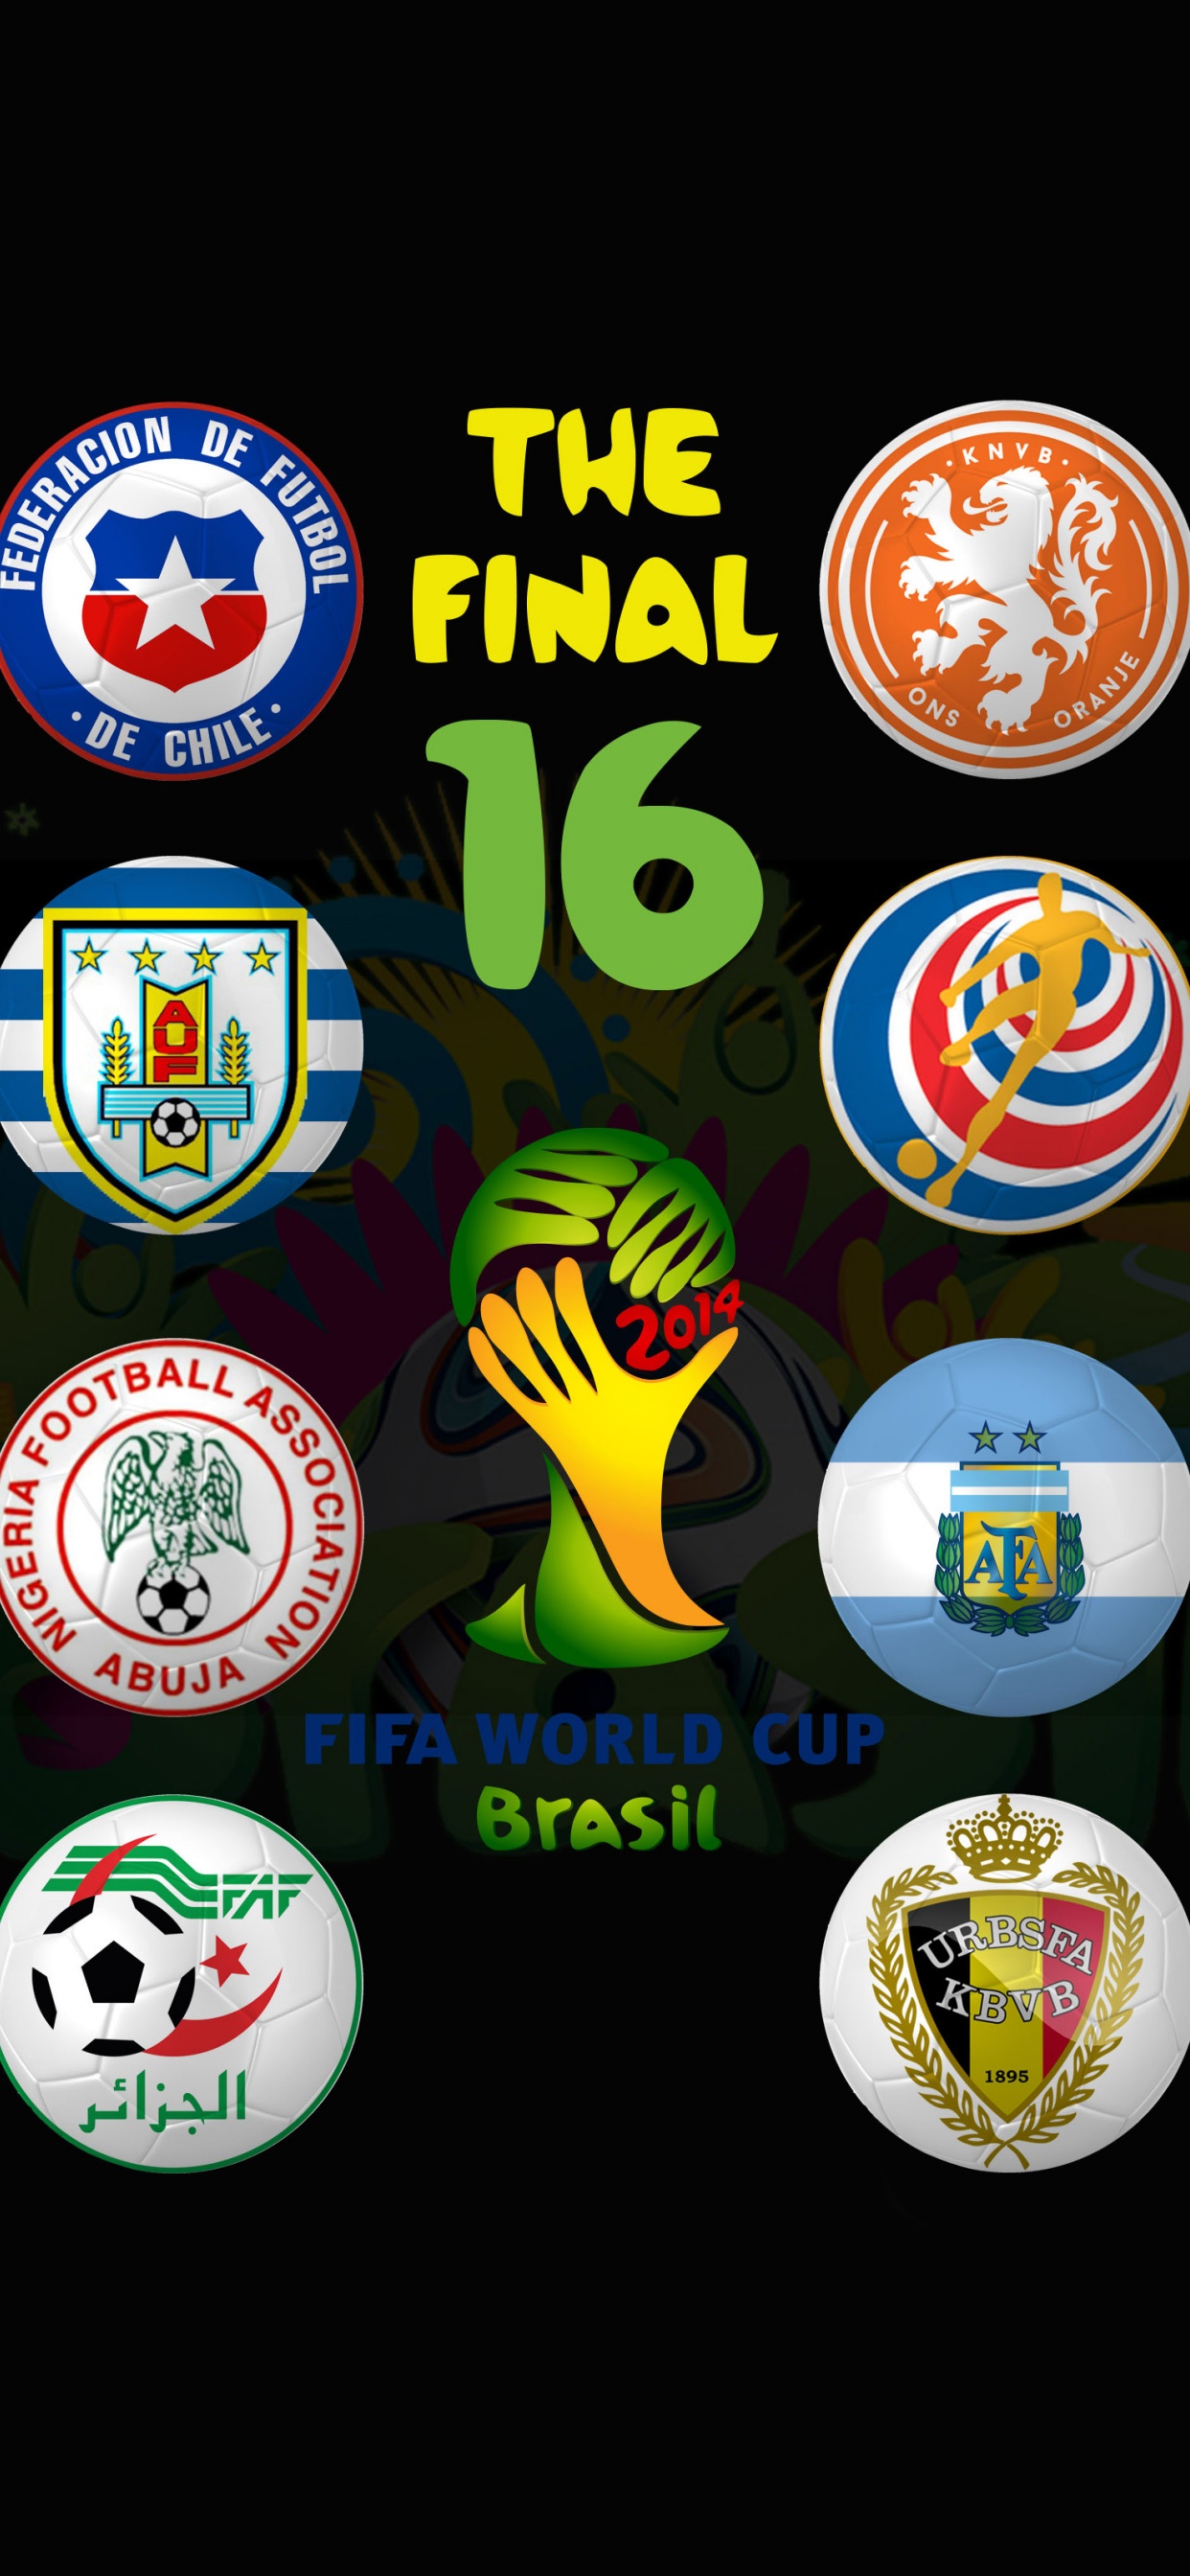 Brazil 2014 WC Round Of 16 Bracket